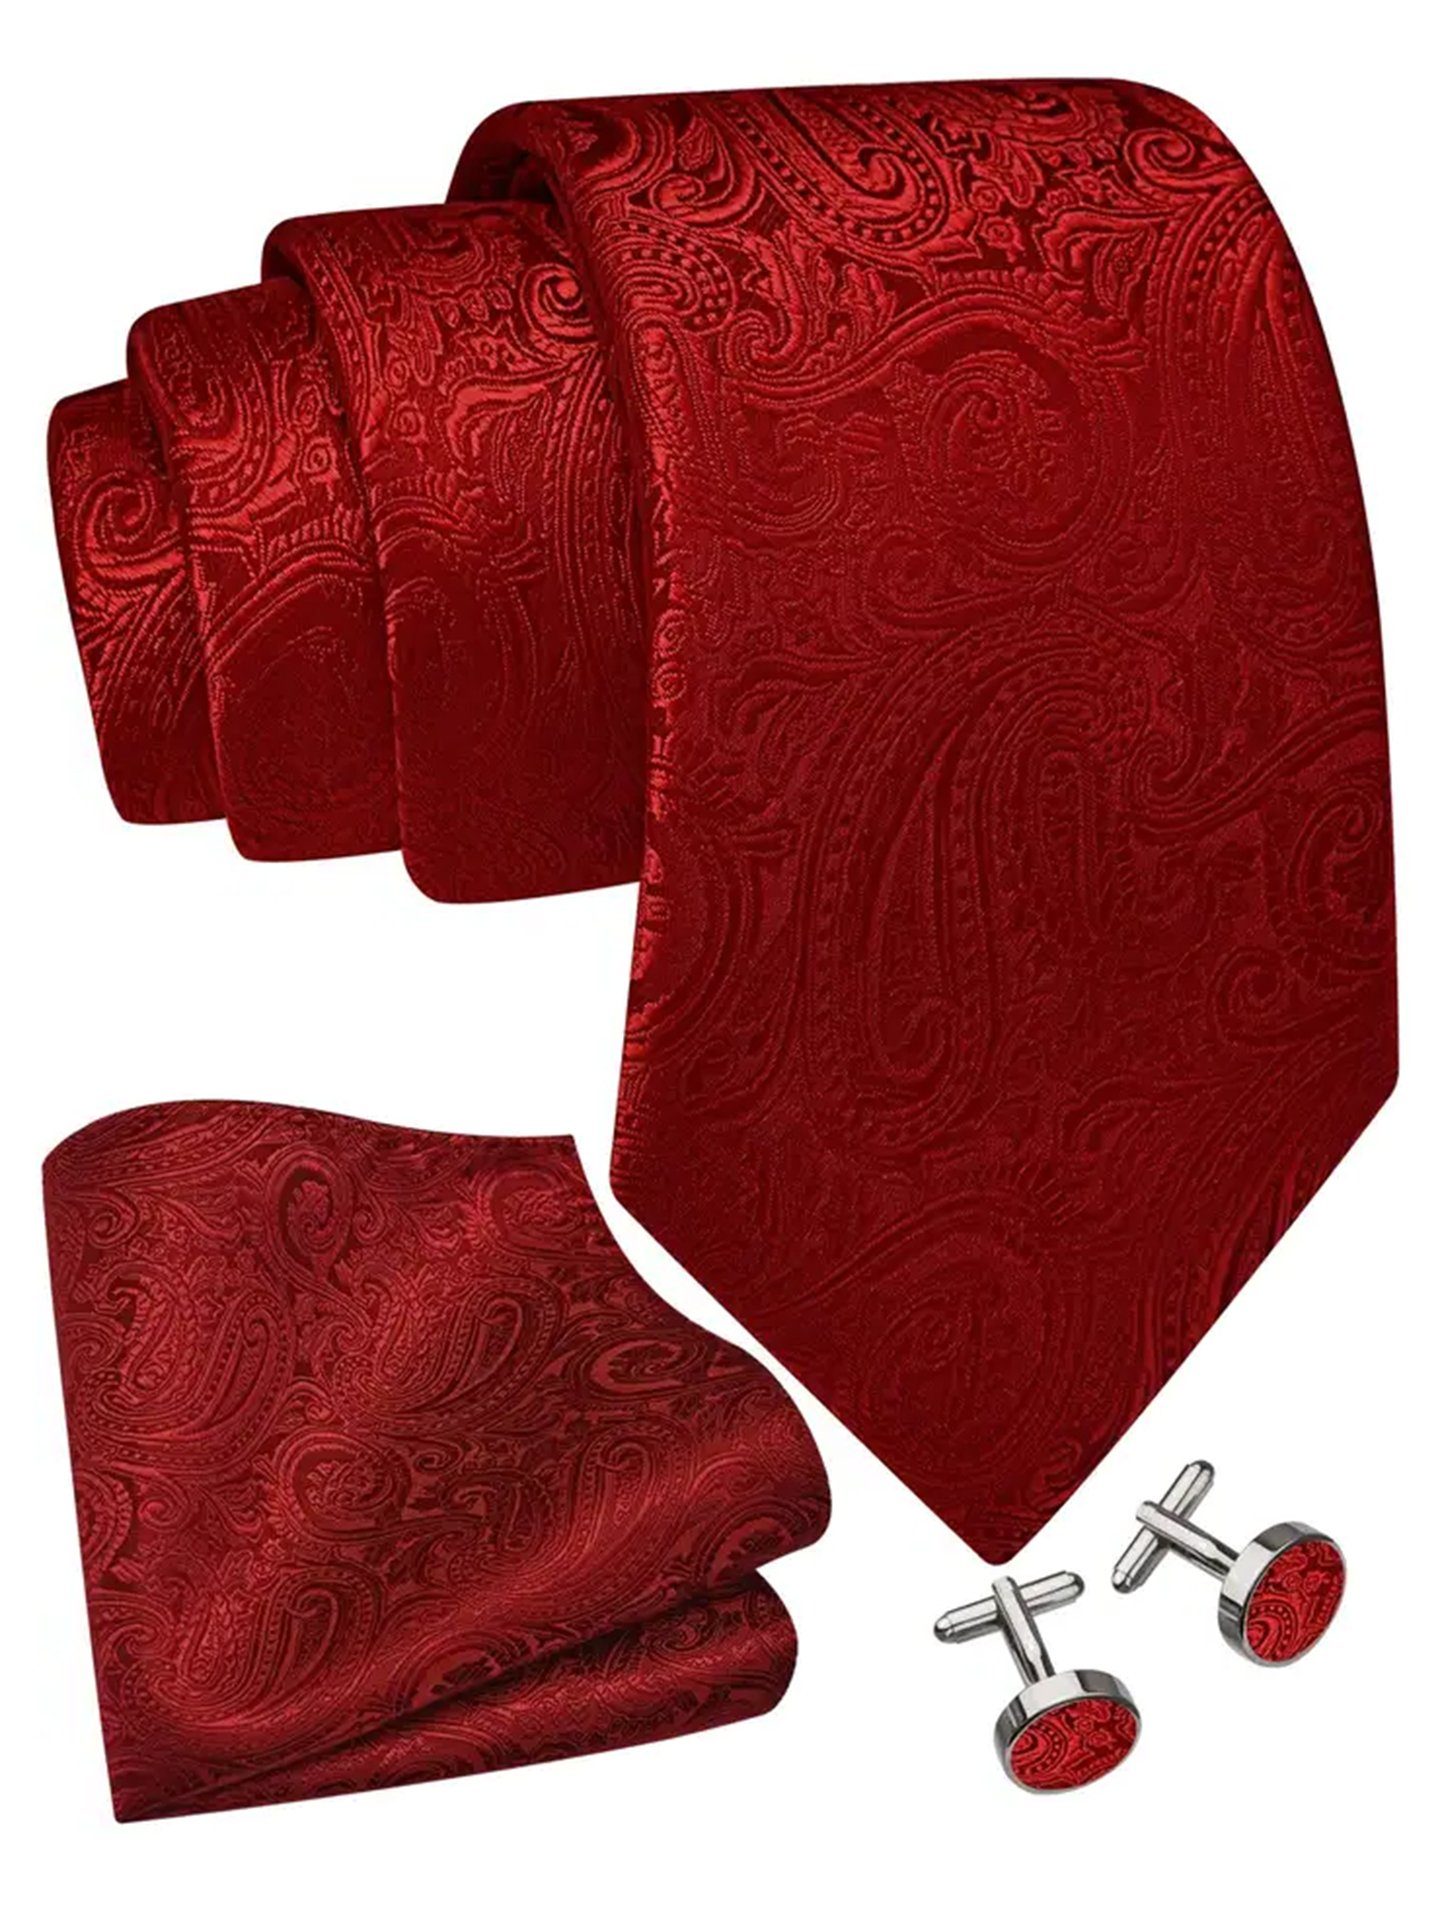 Moschen-Bayern Krawatte Seidenkrawatte Trachtenkrawatte Krawatte Herrenkrawatte Seide Rot Krawatten-Set - Krawatte + Einstecktuch + Manschettenknöpfe